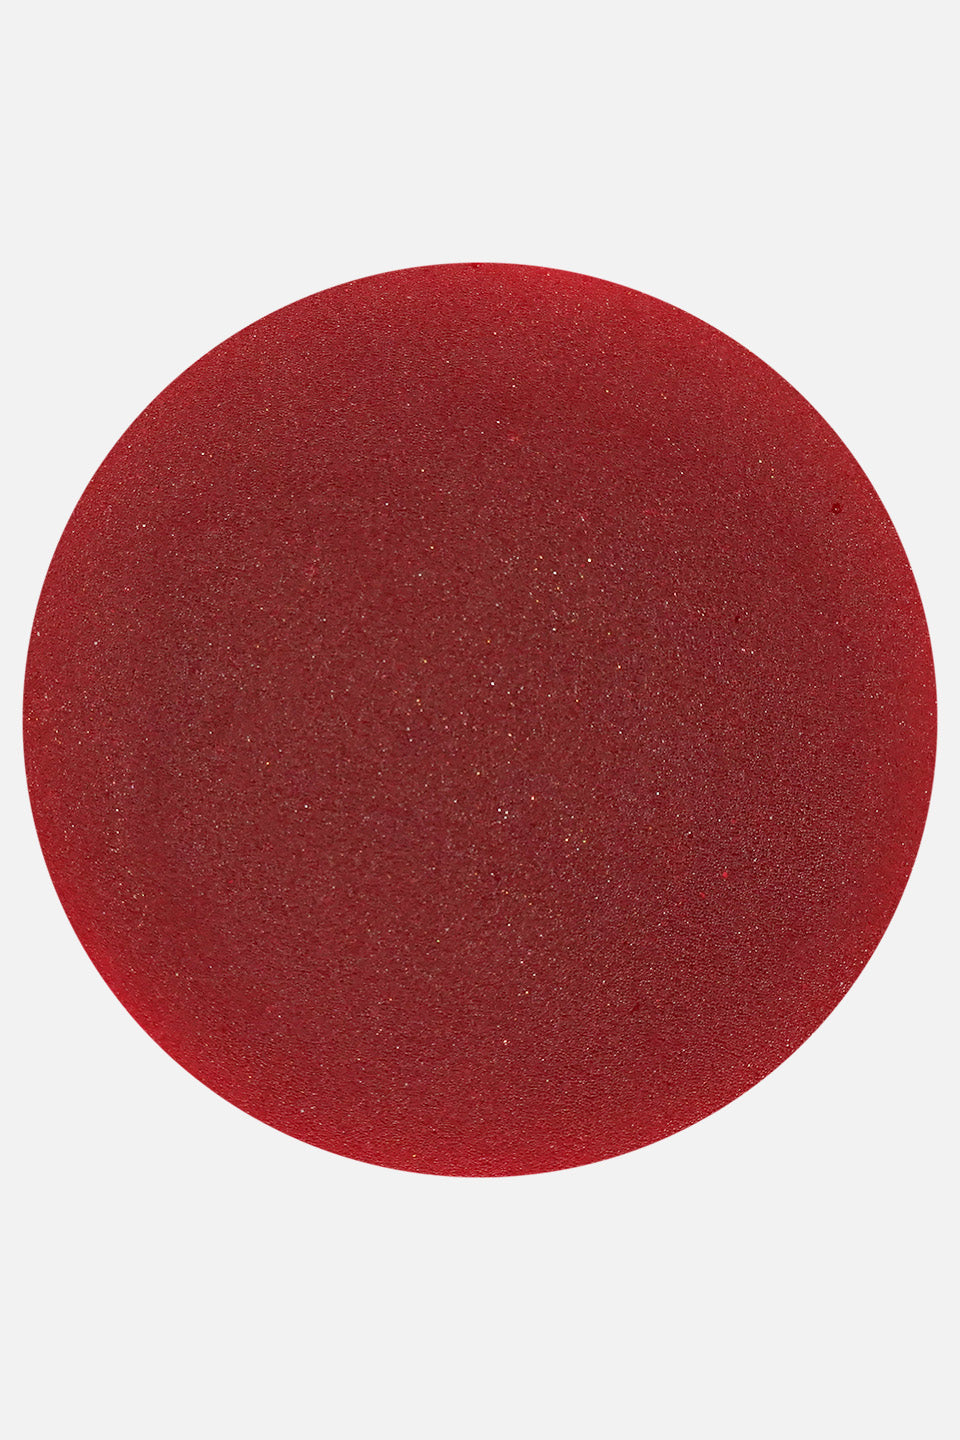 Polvere acrilica rosso Gladiolo 3 g